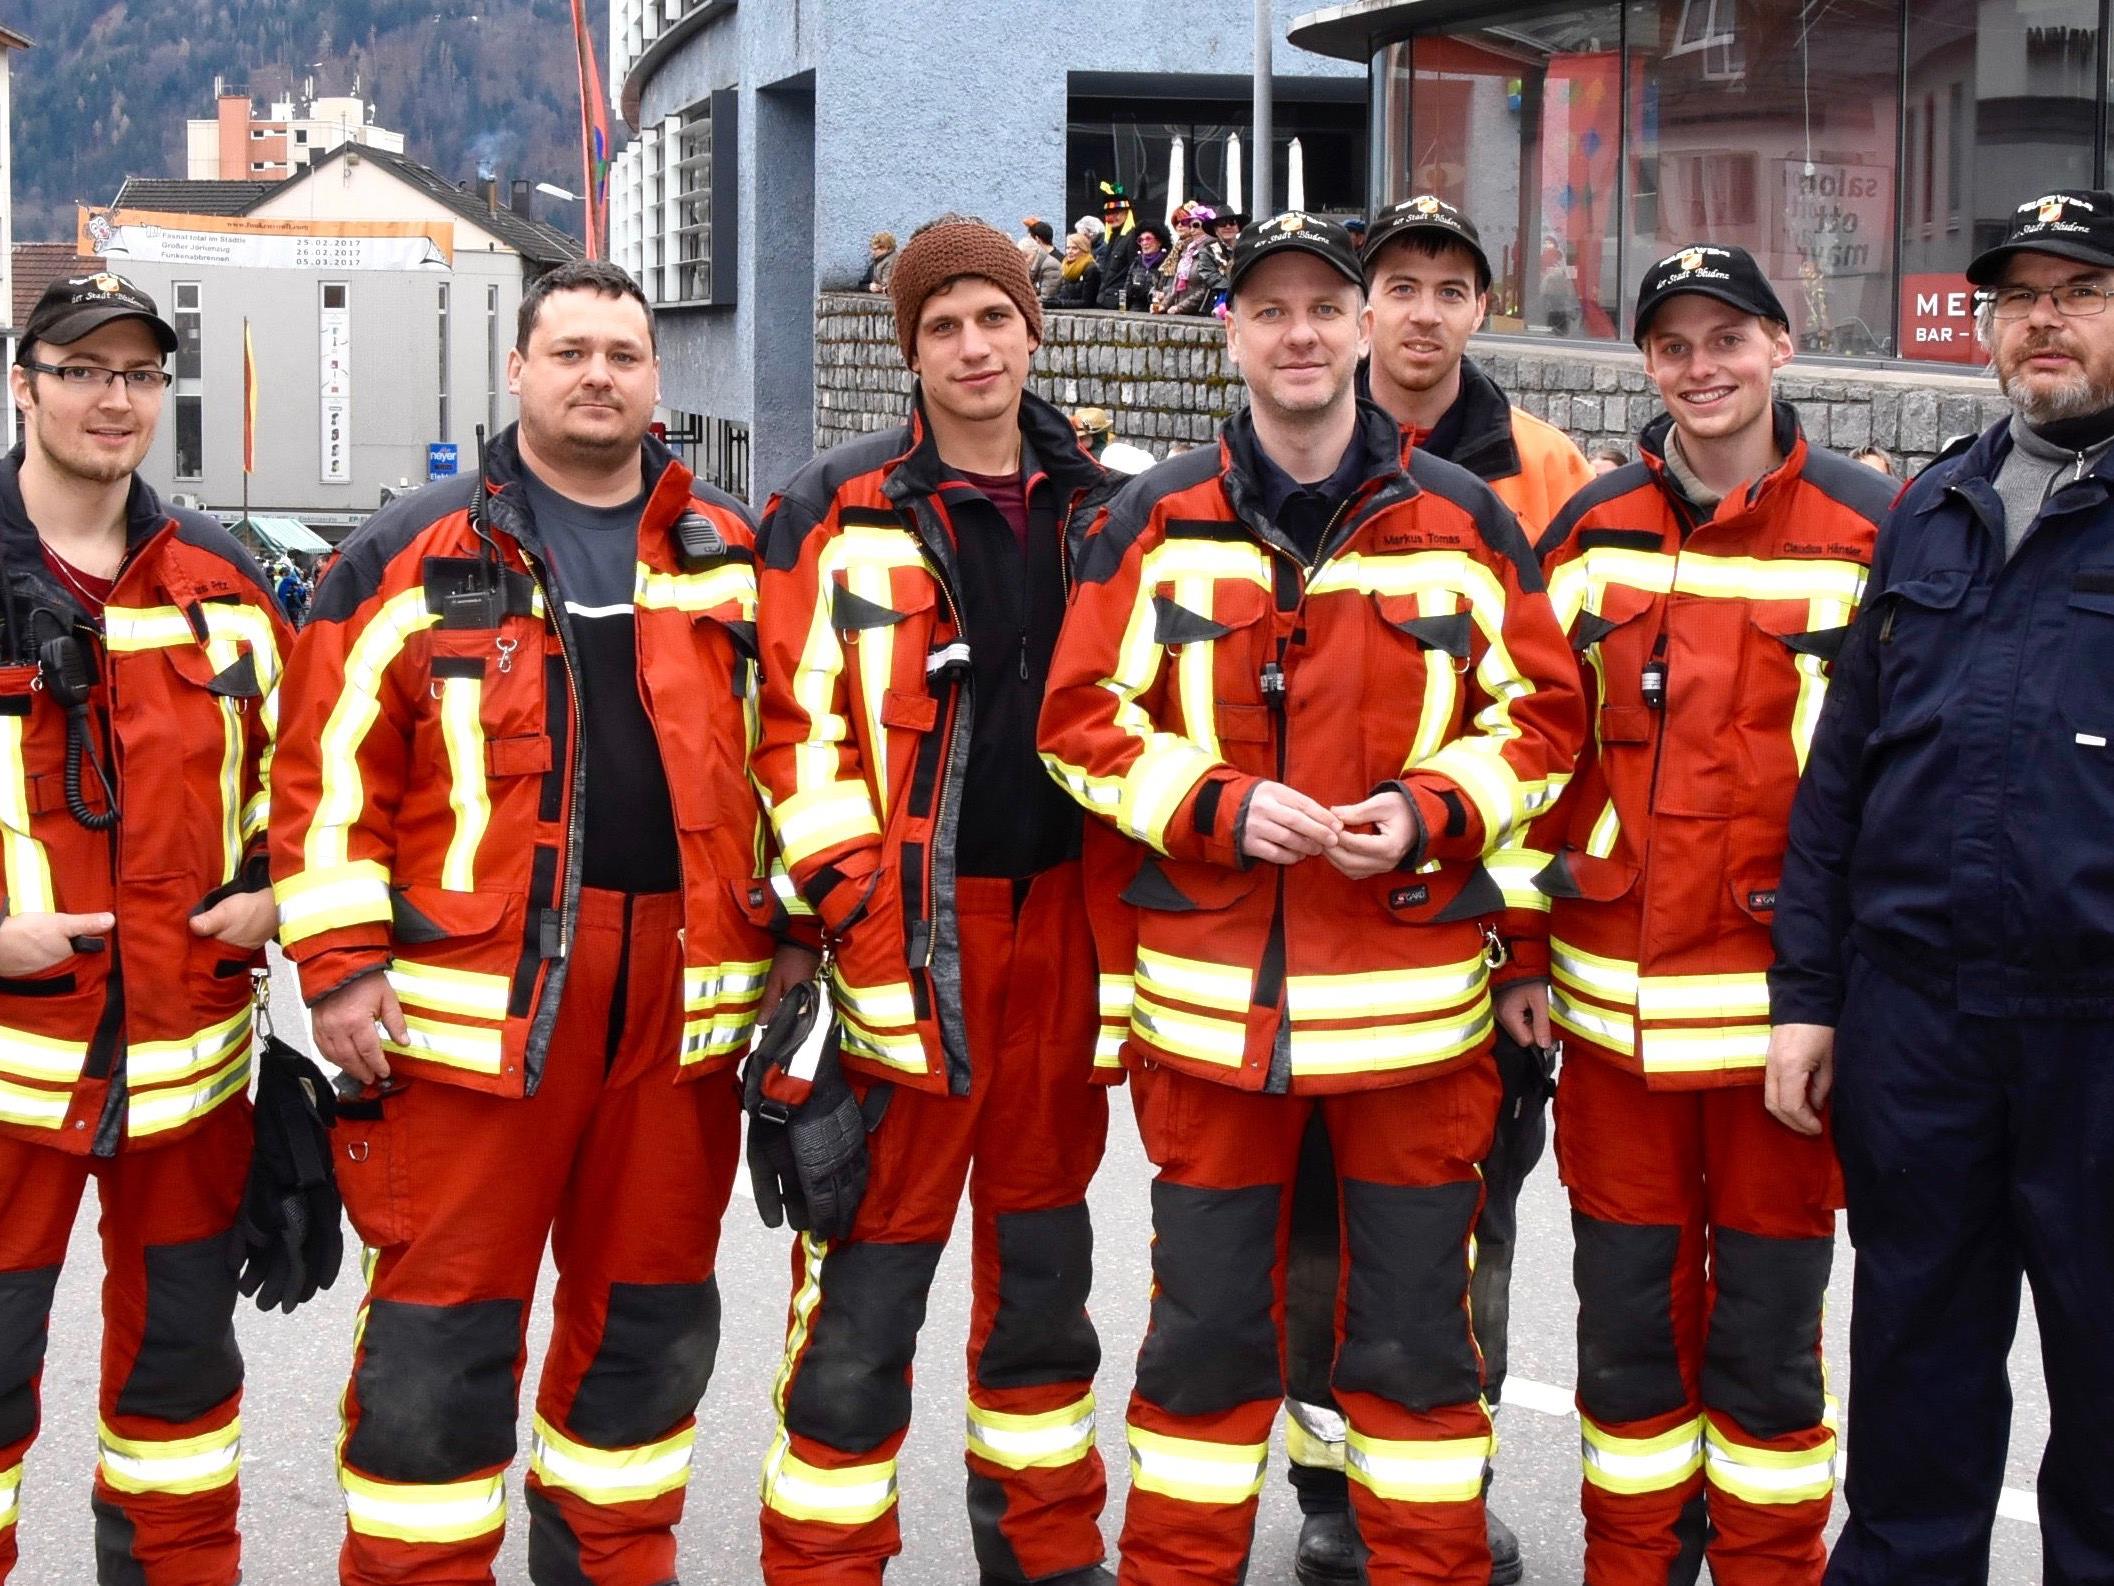 Auch Mitglieder der Feuerwehr Bludenz halfen mit, um einen geordneten Ablauf des großen Jöri-Umzuges zu ermöglichen.